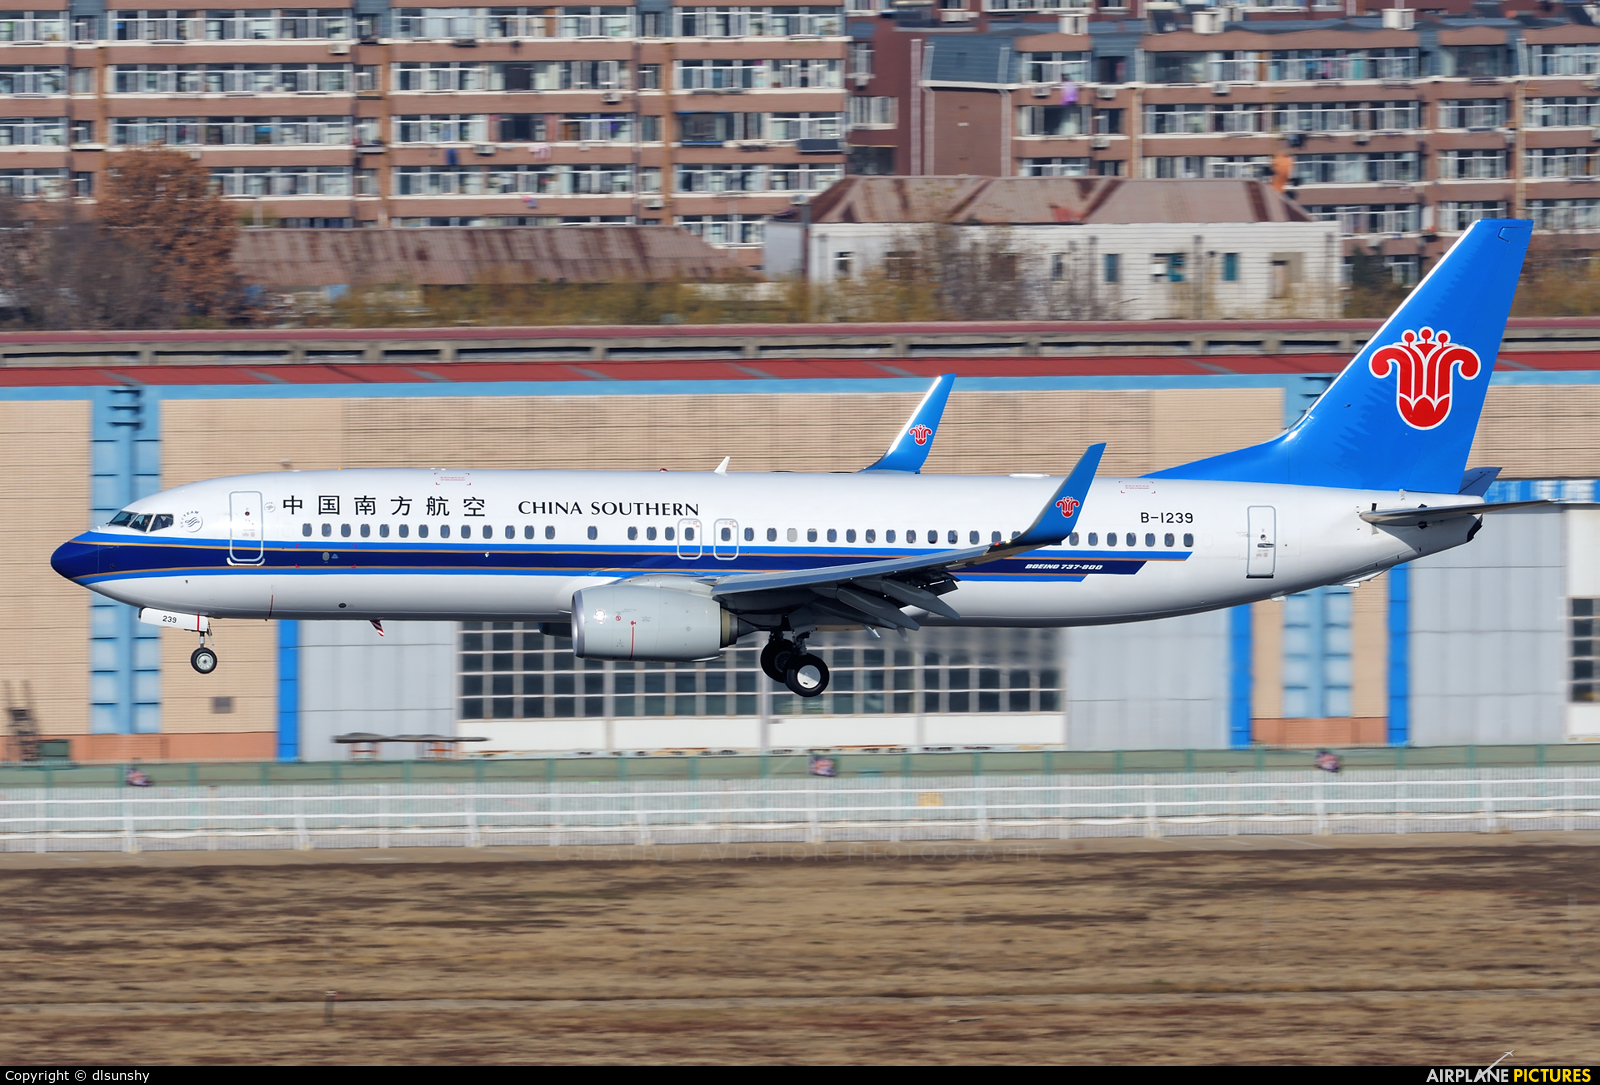 China Southern Airlines B-1239 aircraft at Dalian Zhoushuizi Int'l